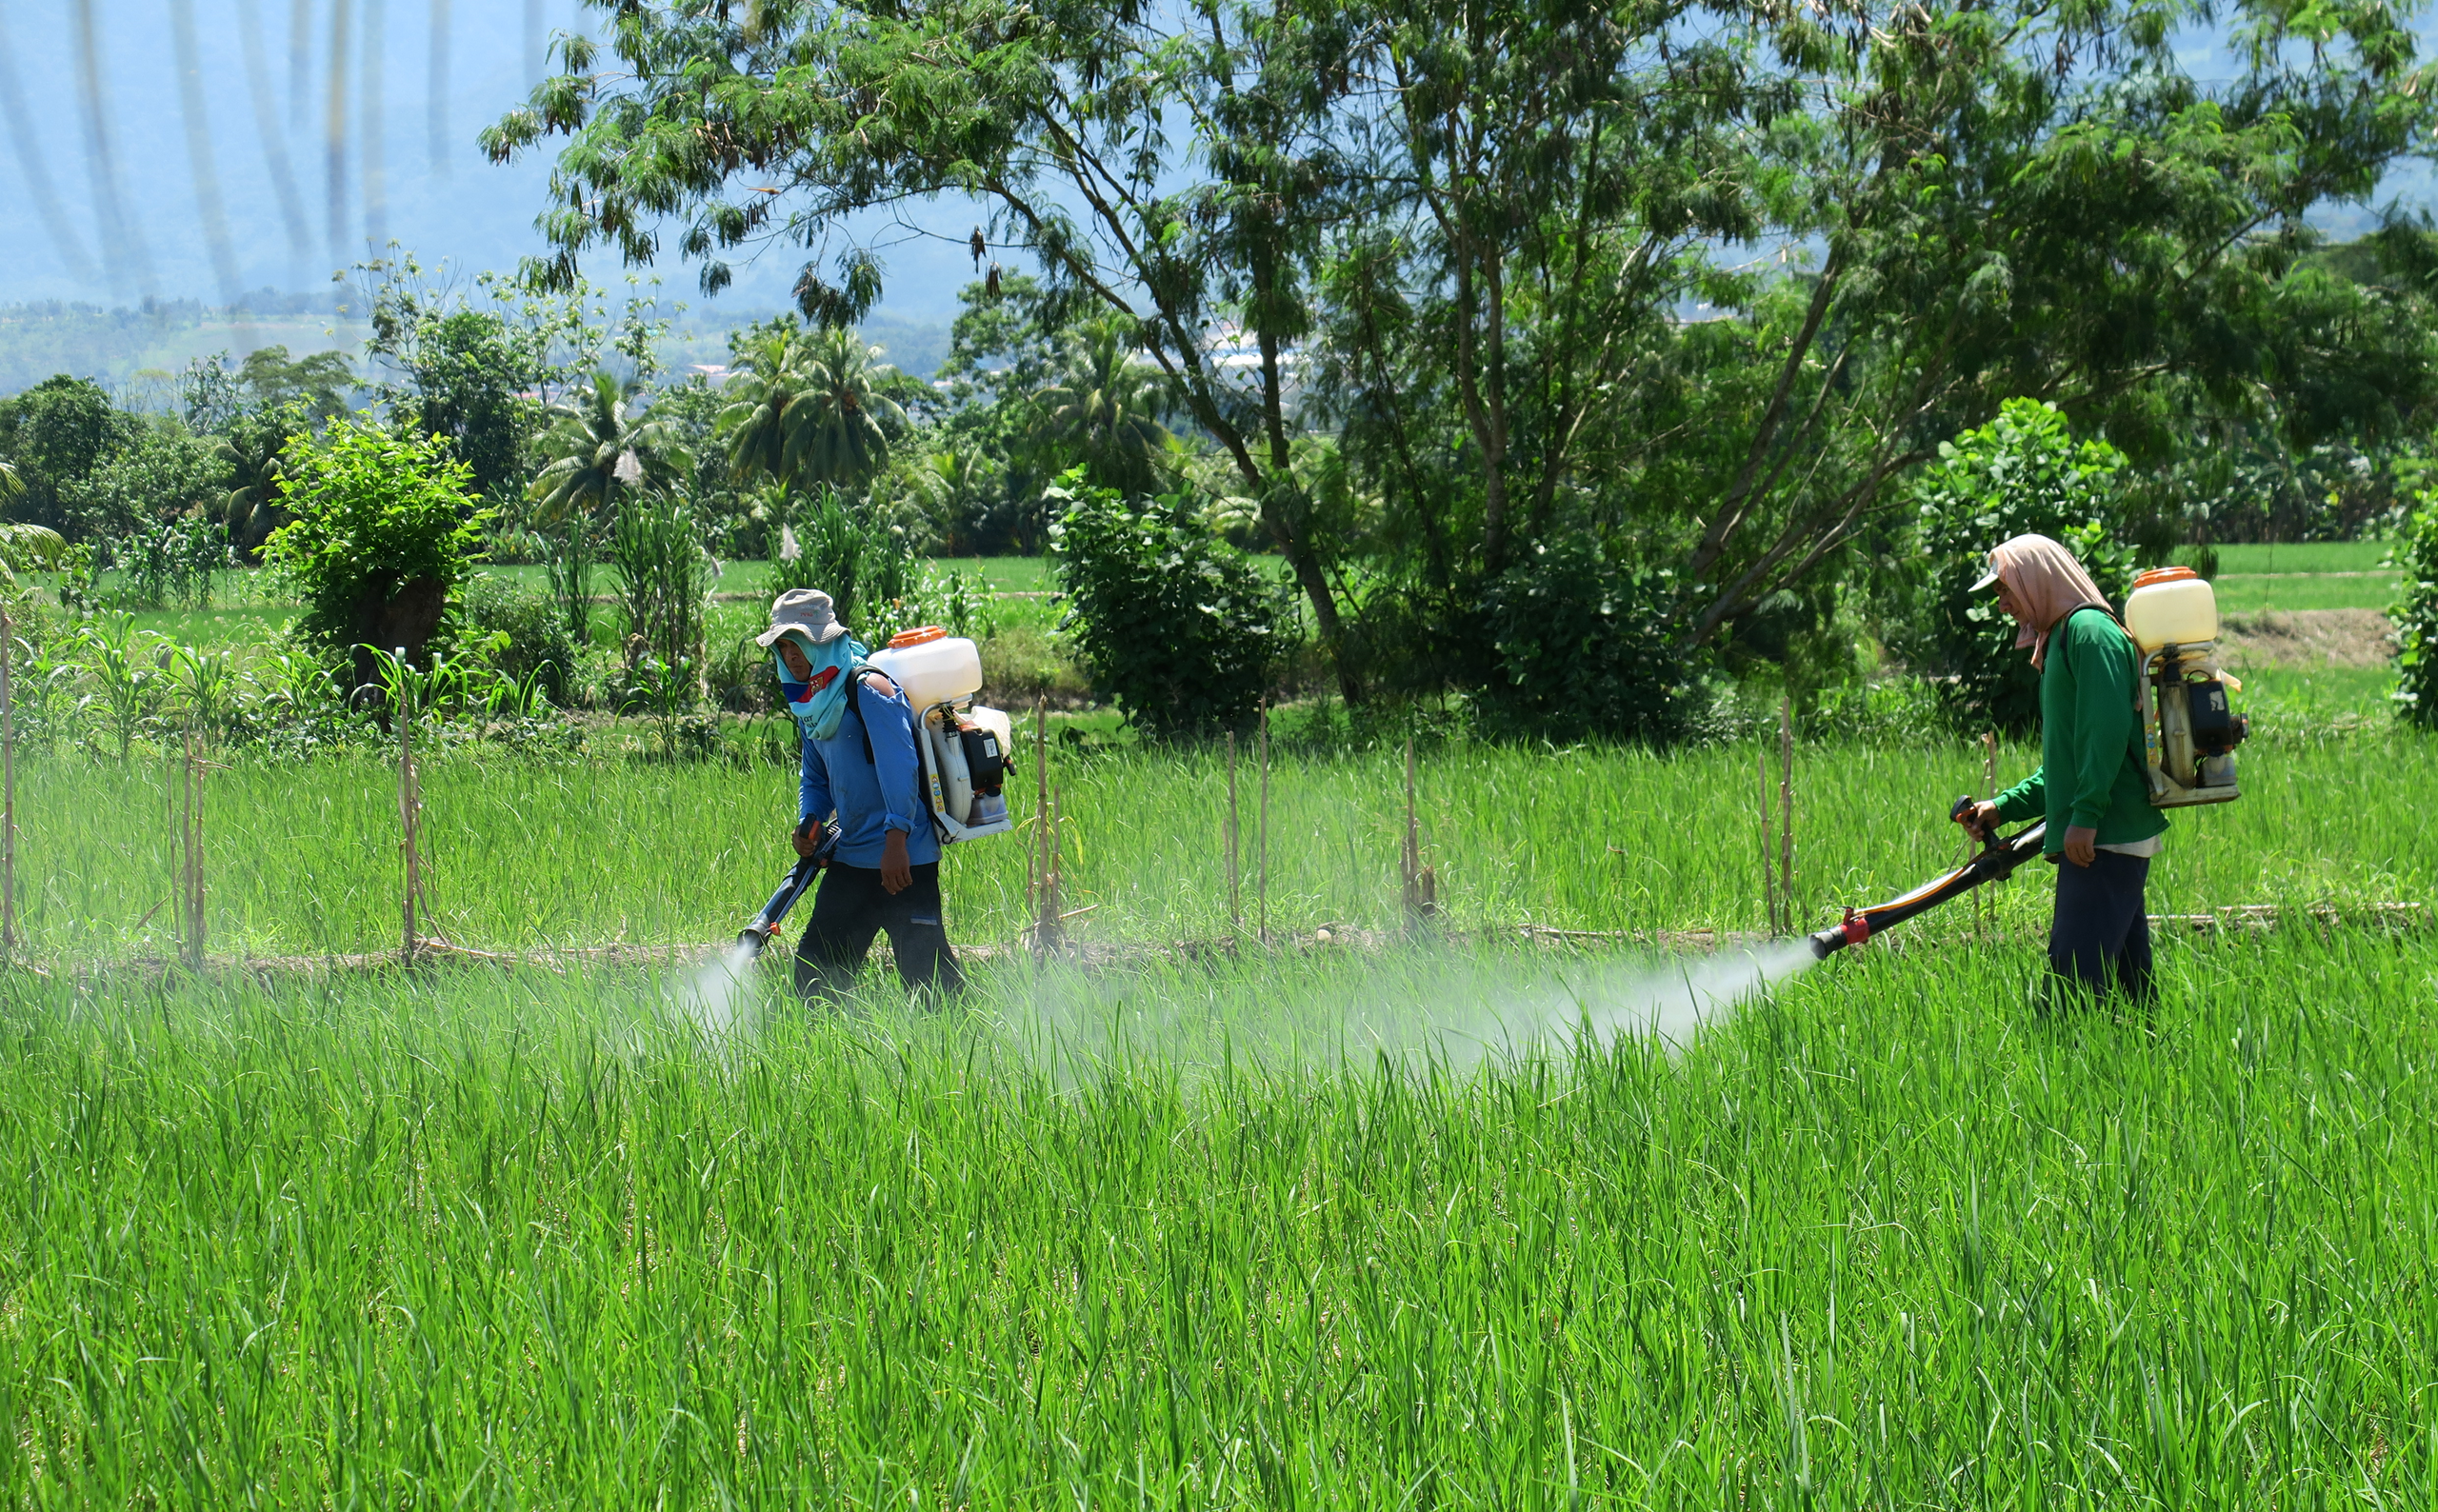 <p>Trabajadores rocían pesticidas en plantaciones de arroz cerca de la ciudad peruana de Tarapoto, en la región amazónica de San Martín. La laxa normativa de Perú permite el uso de pesticidas prohibidos en muchos otros países (Imagen: <a href="https://www.flickr.com/photos/dpu-ucl/34926558253/in/photolist-3brkWN-fhrCWG-MZEKw-VdkJWR-P14dSx-NExkLW-Tkbah">Laura-Fee Wloka</a> / <a href="https://www.flickr.com/people/dpu-ucl/">Unidad de Planificación del Desarrollo, University College London</a>, <a href="https://creativecommons.org/licenses/by/2.0/">CC BY</a>)</p>